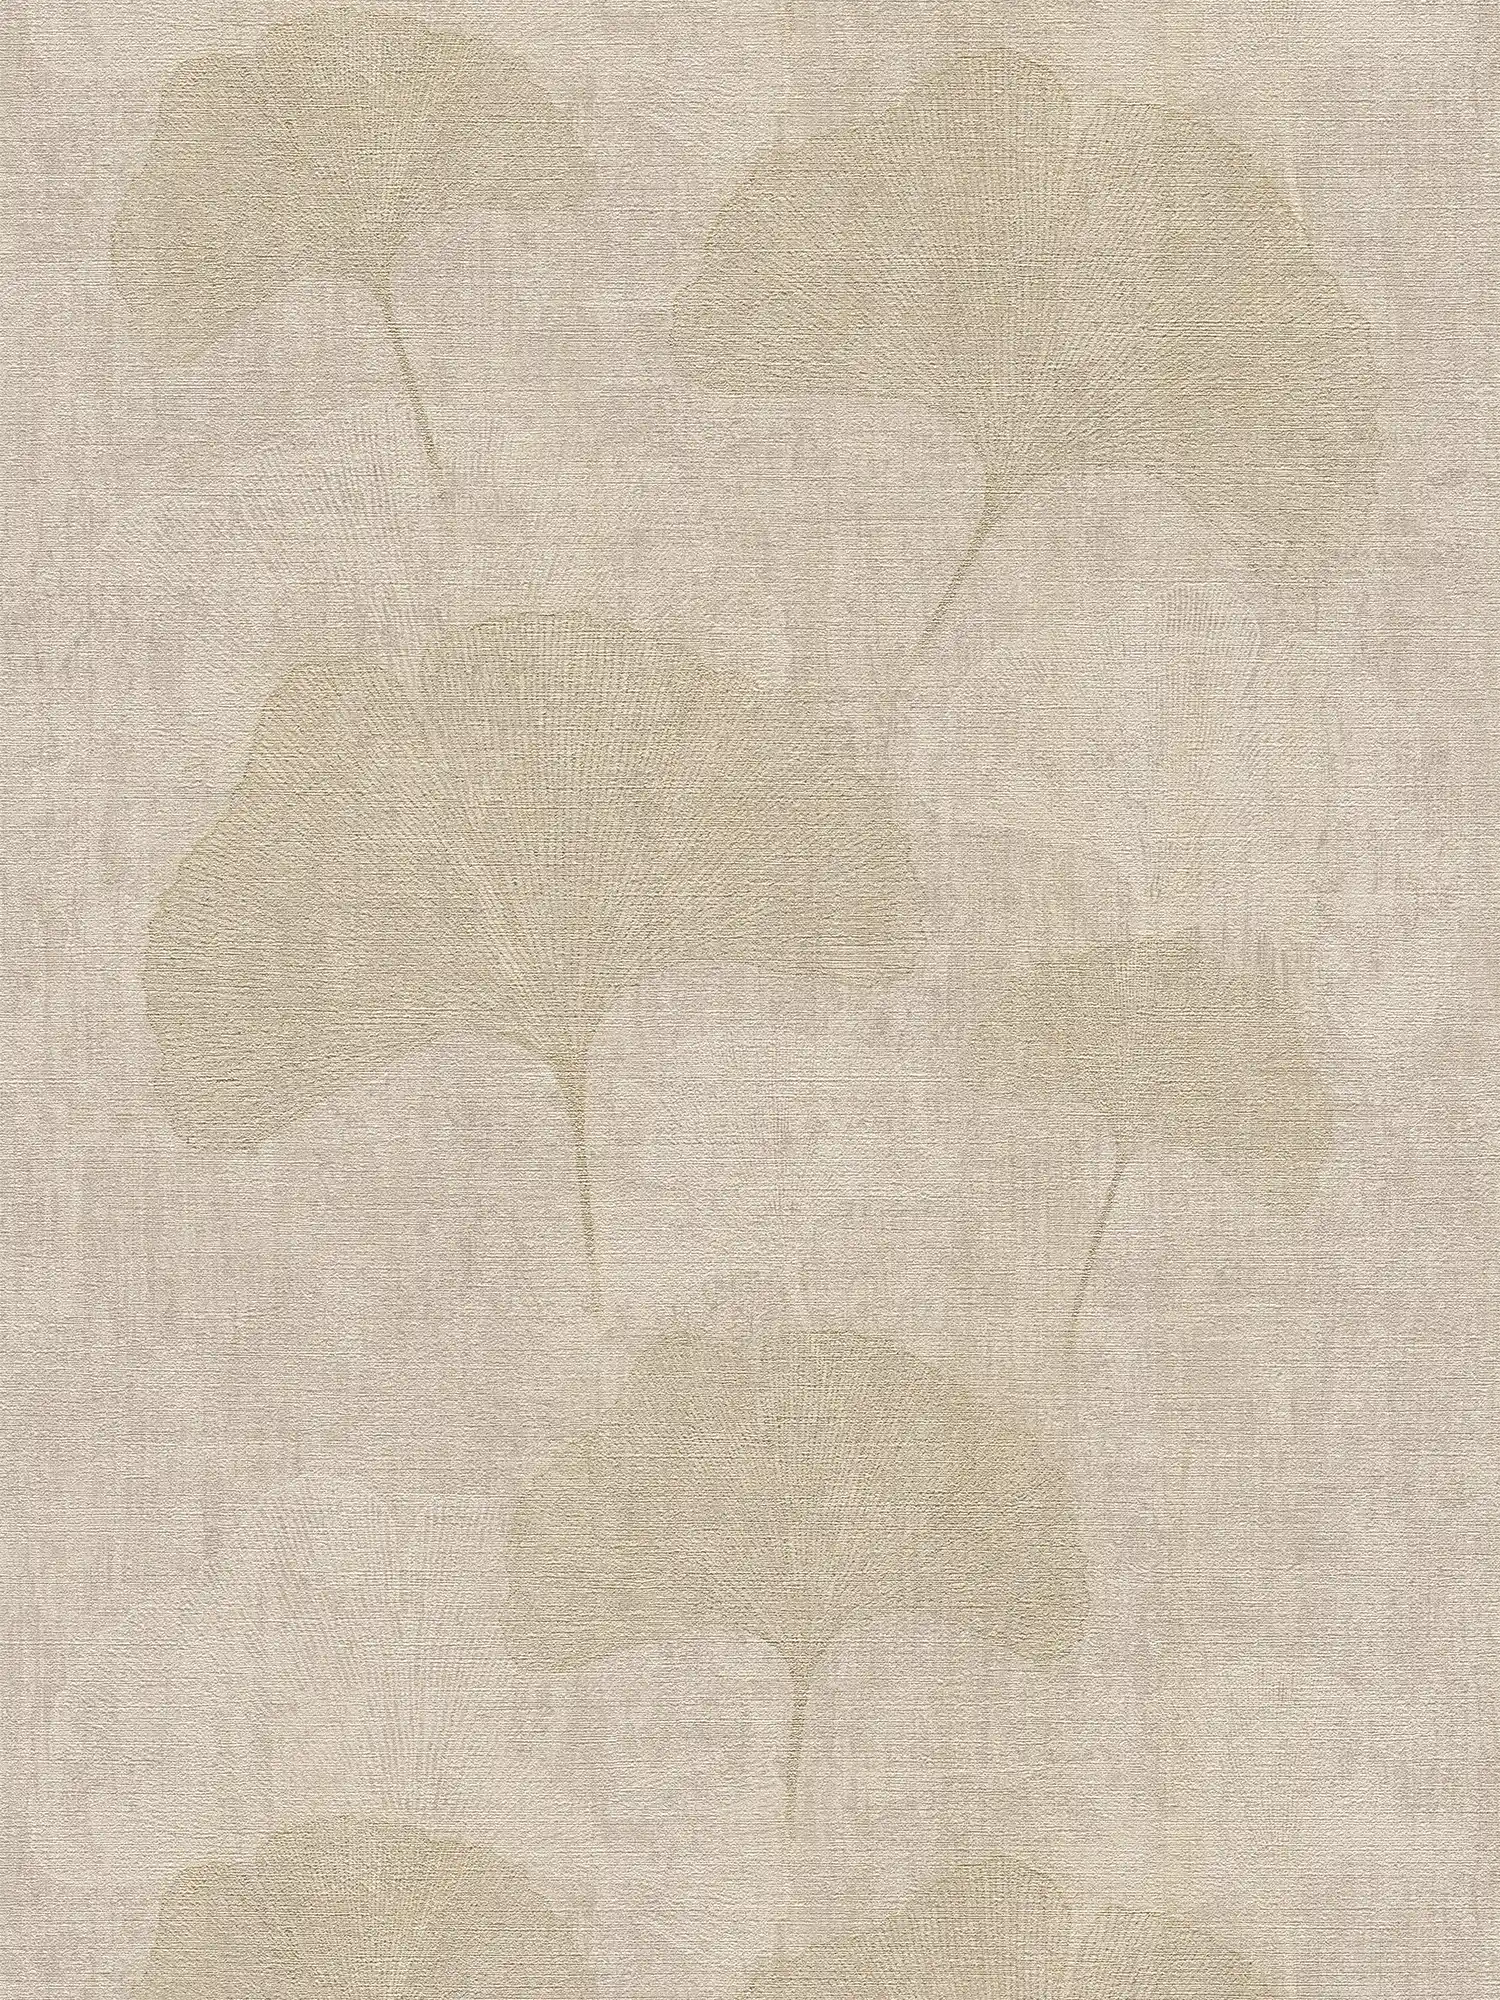 Ginko designbehang met goudeffect & kleurschakeringen - beige, metallic
